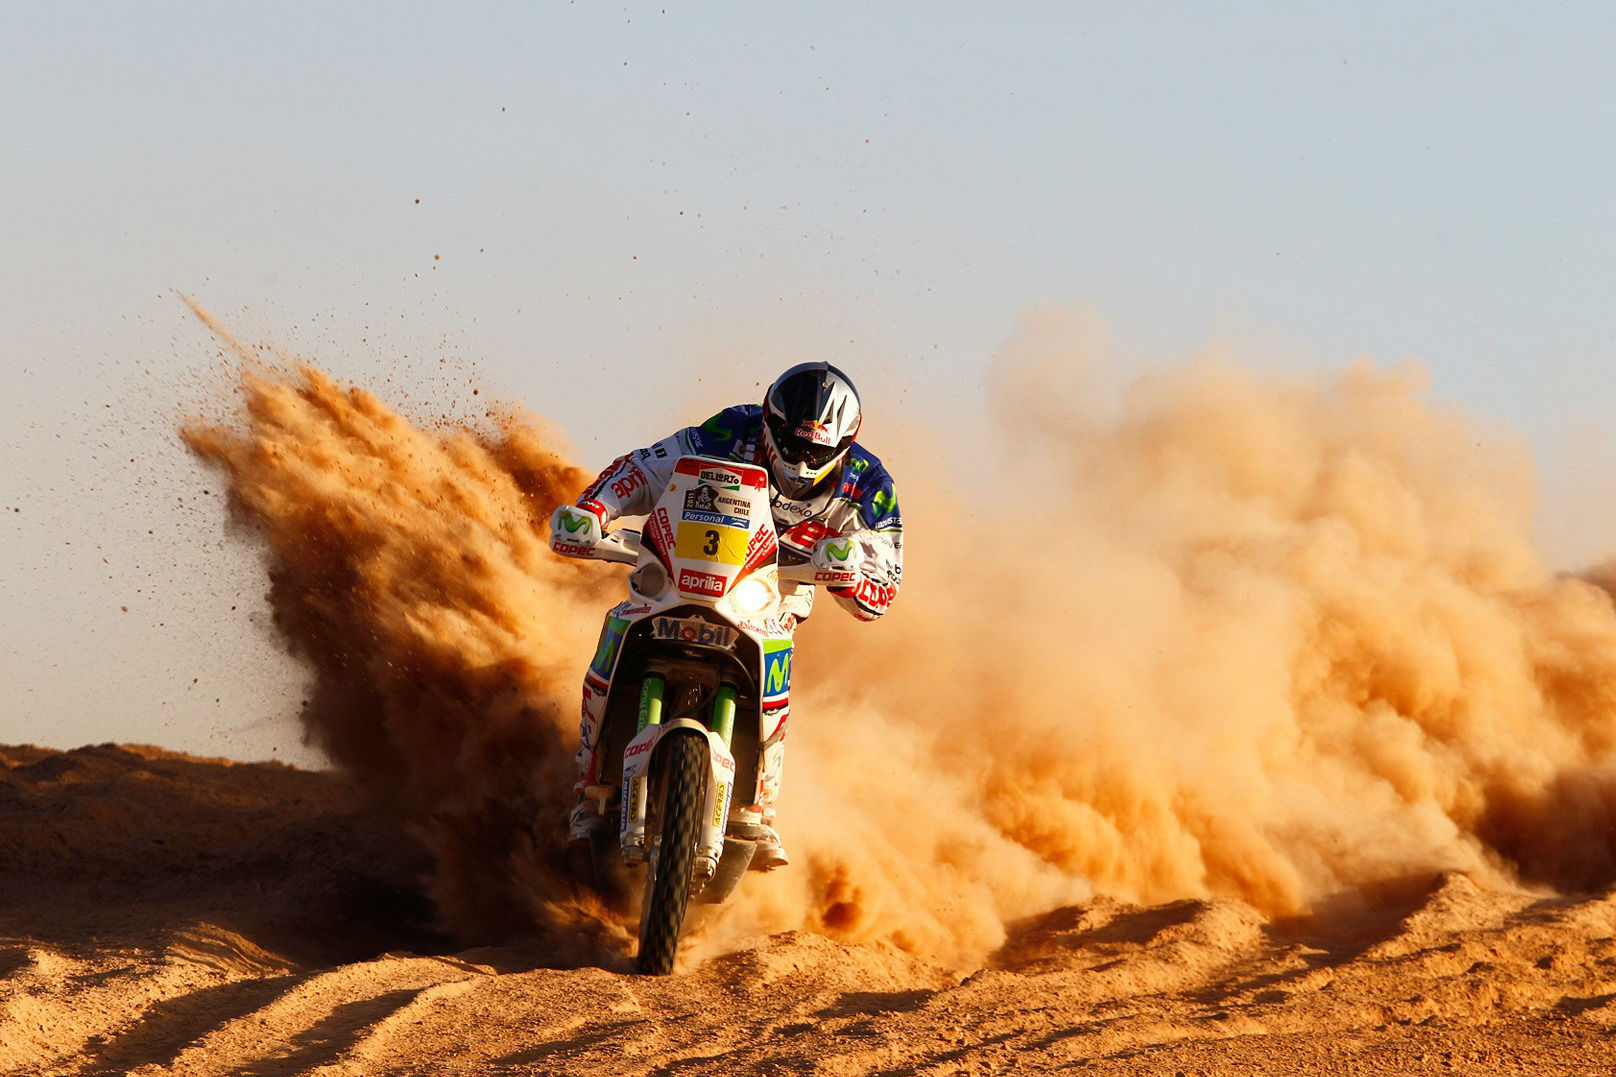 Official 2015 Dakar rally teaser video released